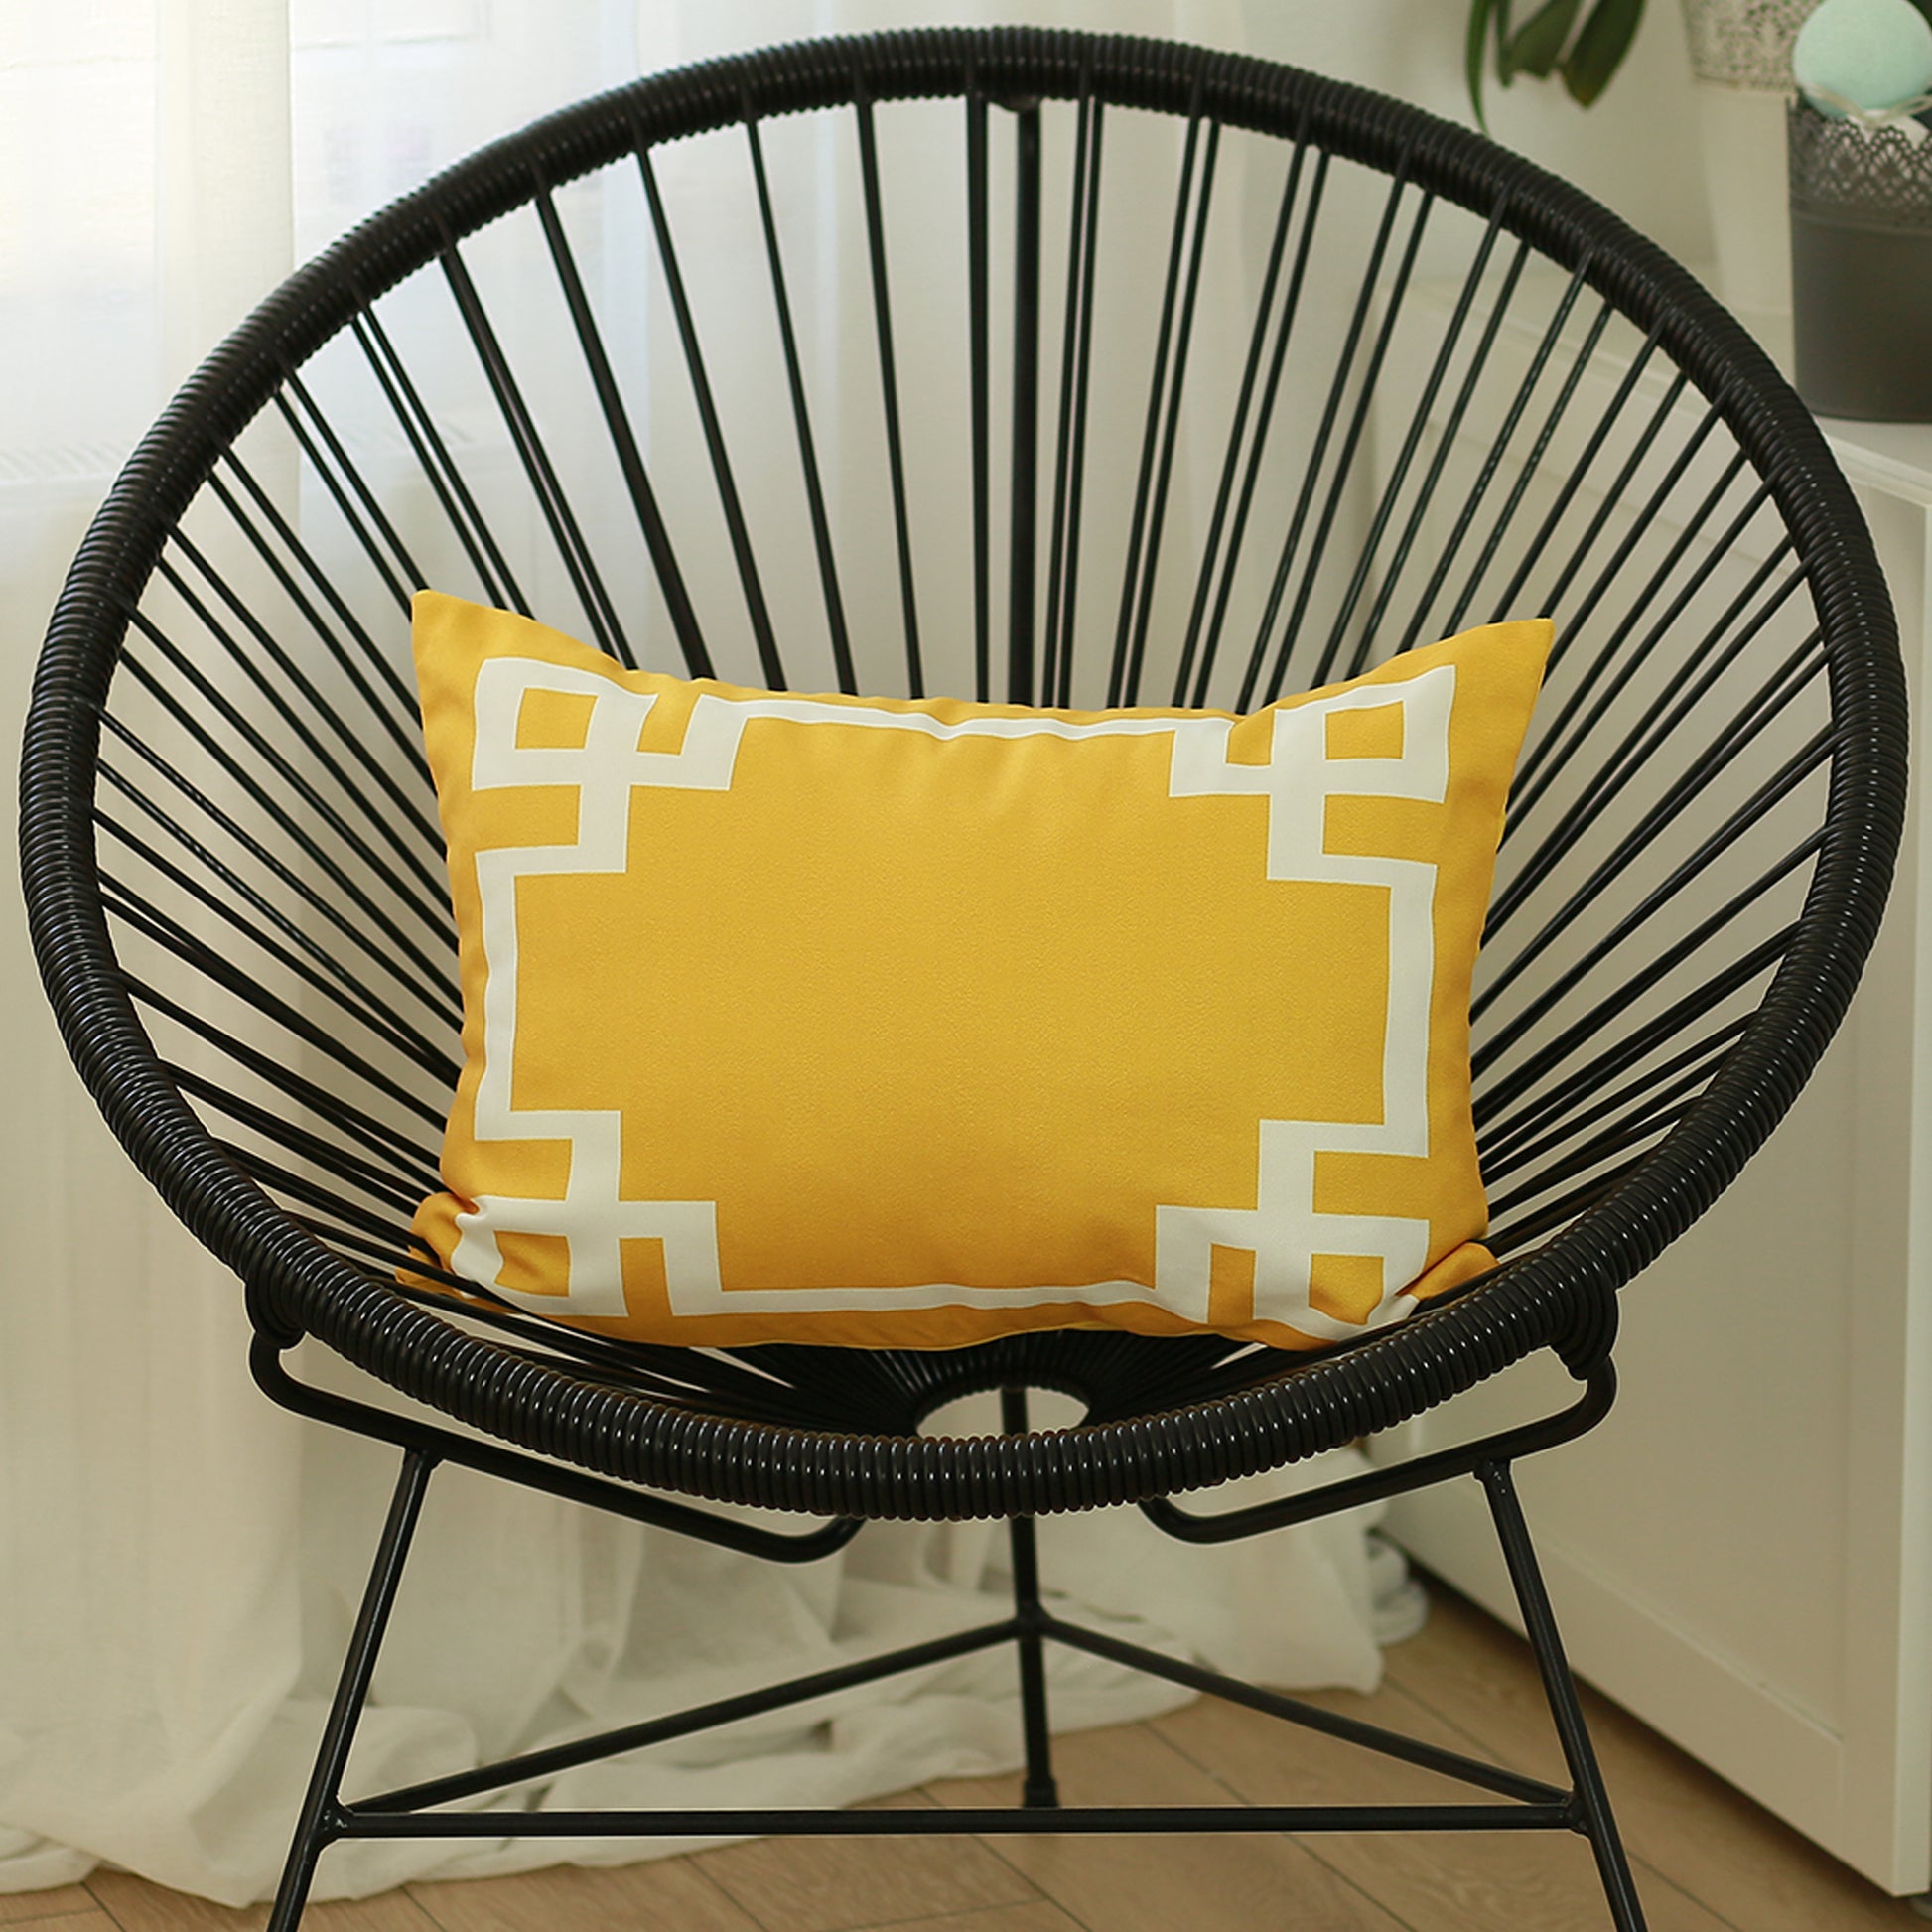 Geometric Yellow&White Square Throw Pillow Cover - Apolena